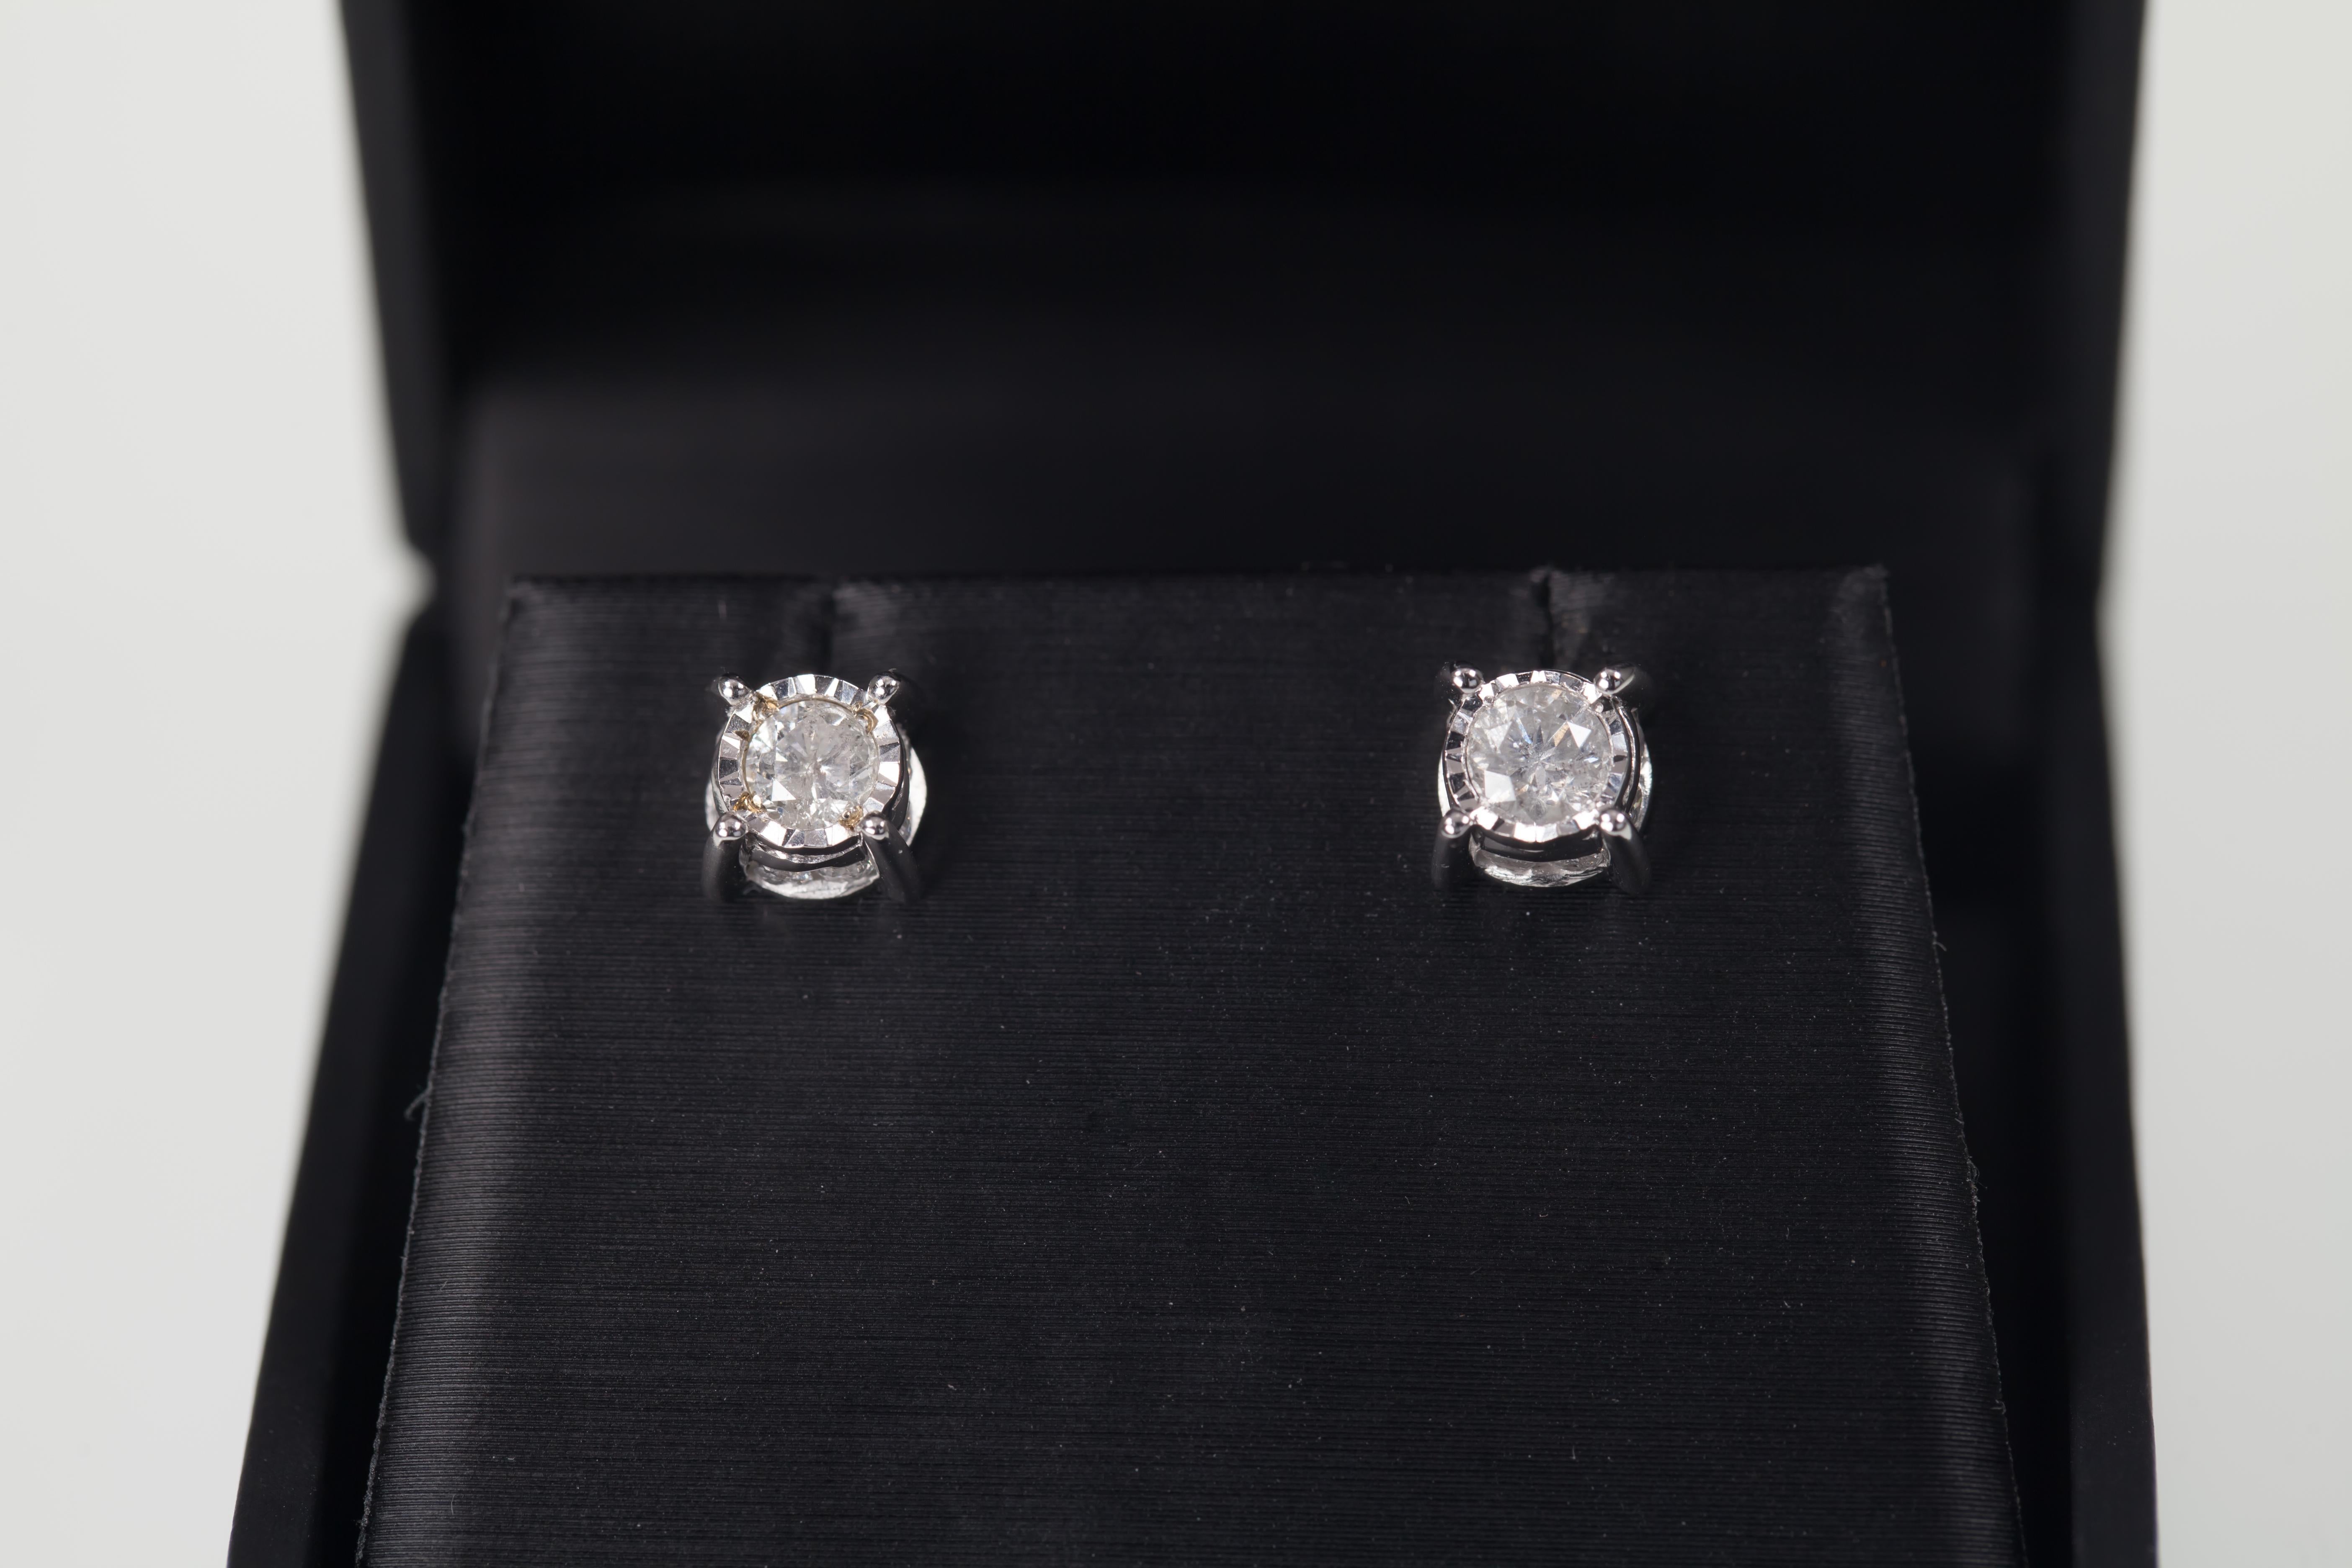 Wunderschöne Ohrstecker
Merkmal 0,44 Karat runde Diamanten
Durchschnittliche Farbe = H
Durchschnittliche Klarheit = I1
16 Akzentsteine an den Seiten
Gesamtgewicht der Akzentsteine = 0,32 Karat
Gesamtmasse = 1,9 Gramm
Wunderschönes Geschenk!